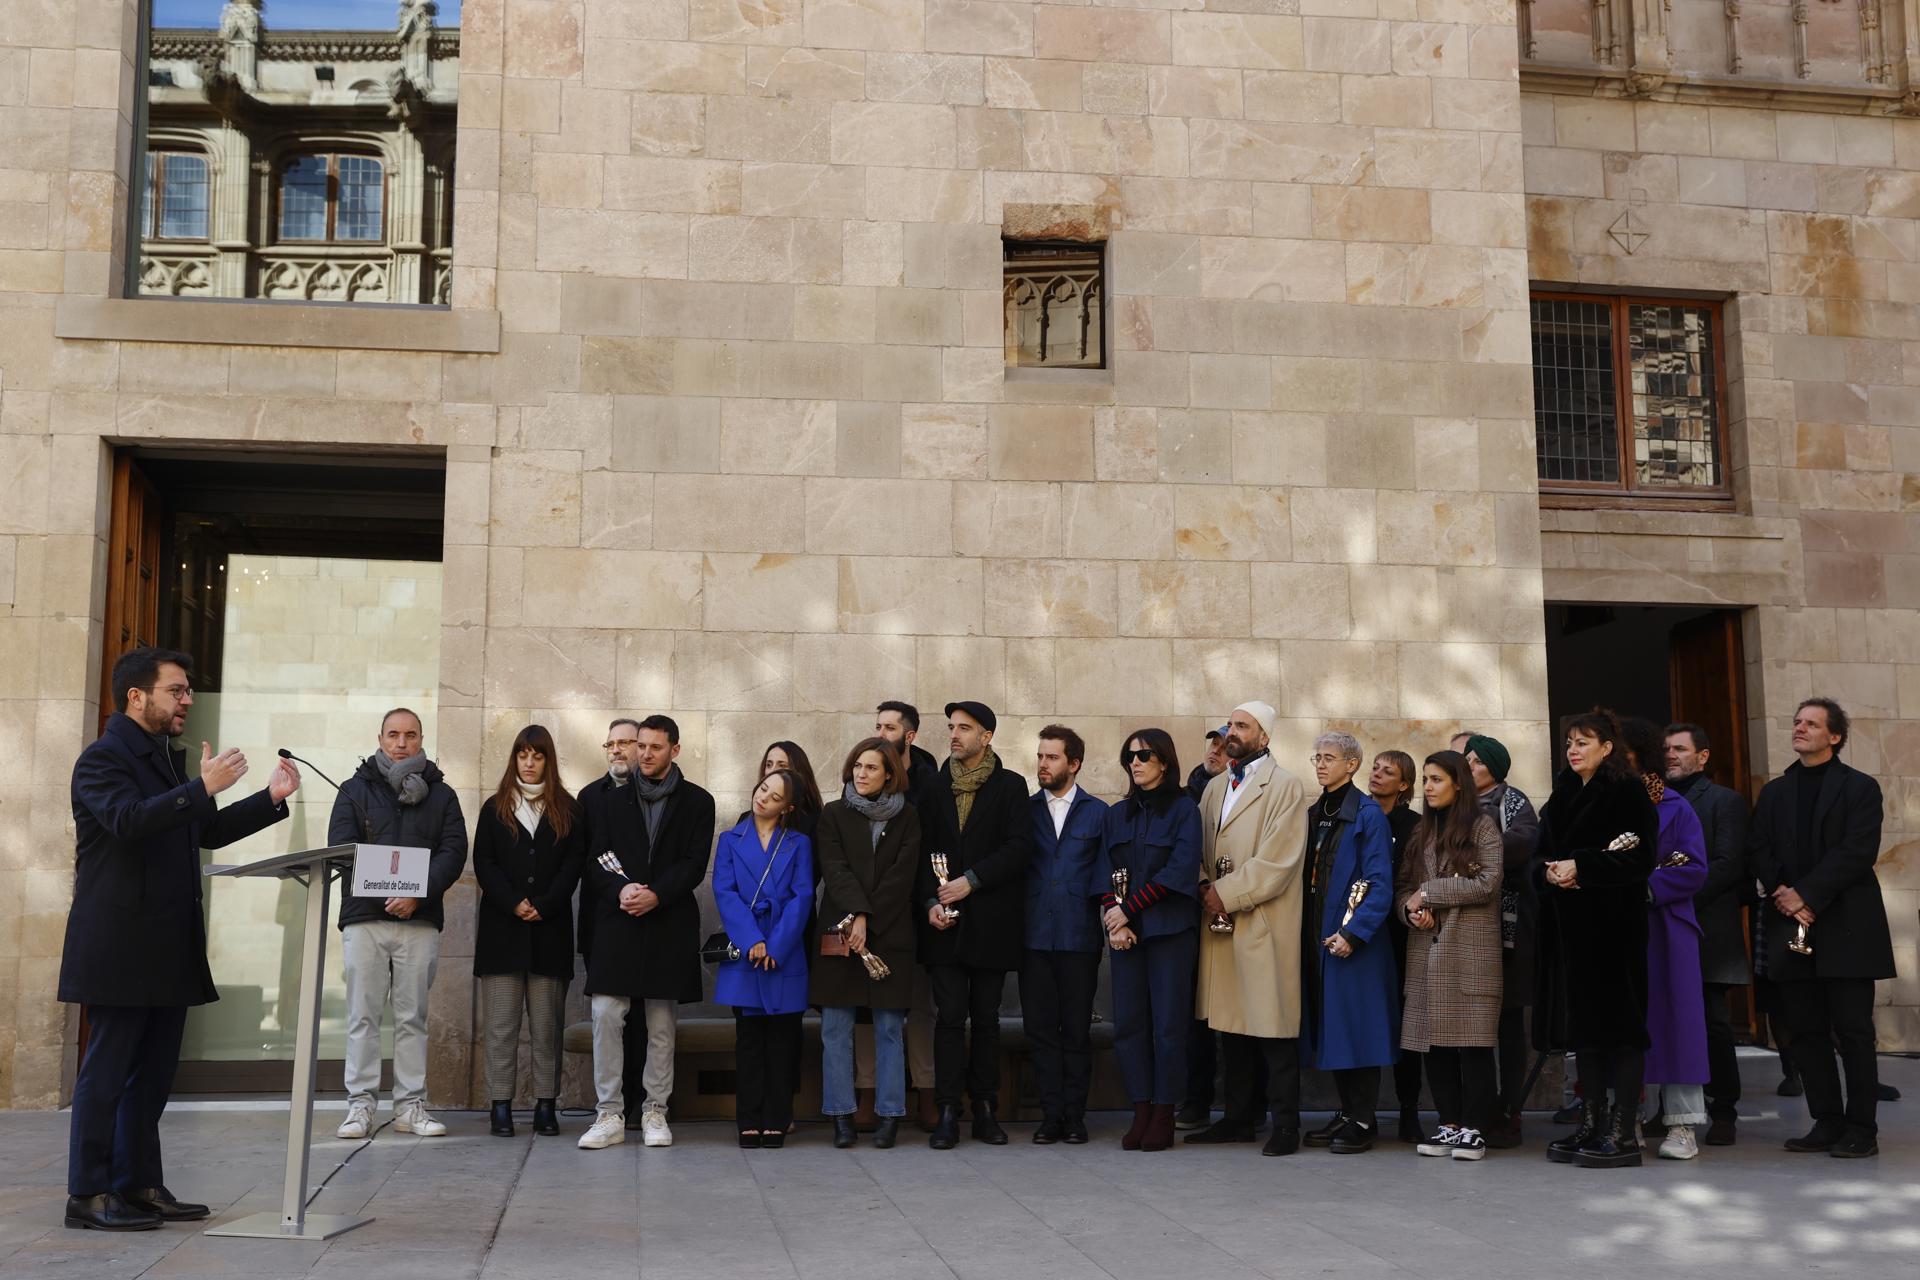 El president Pere Aragonès (i) pronuncia unas palabras durante recepción de los galardonados en la gala de los Premios Gaudí 2023 en el Palau de la Generalitat Palau Generalitat.durante recepción de los galardonados en la gala de los Premios Gaudí 2023 en el Palau de la Generalitat Palau Generalitat desde donde ha exhibido su apoyo al audiovisual catalán.